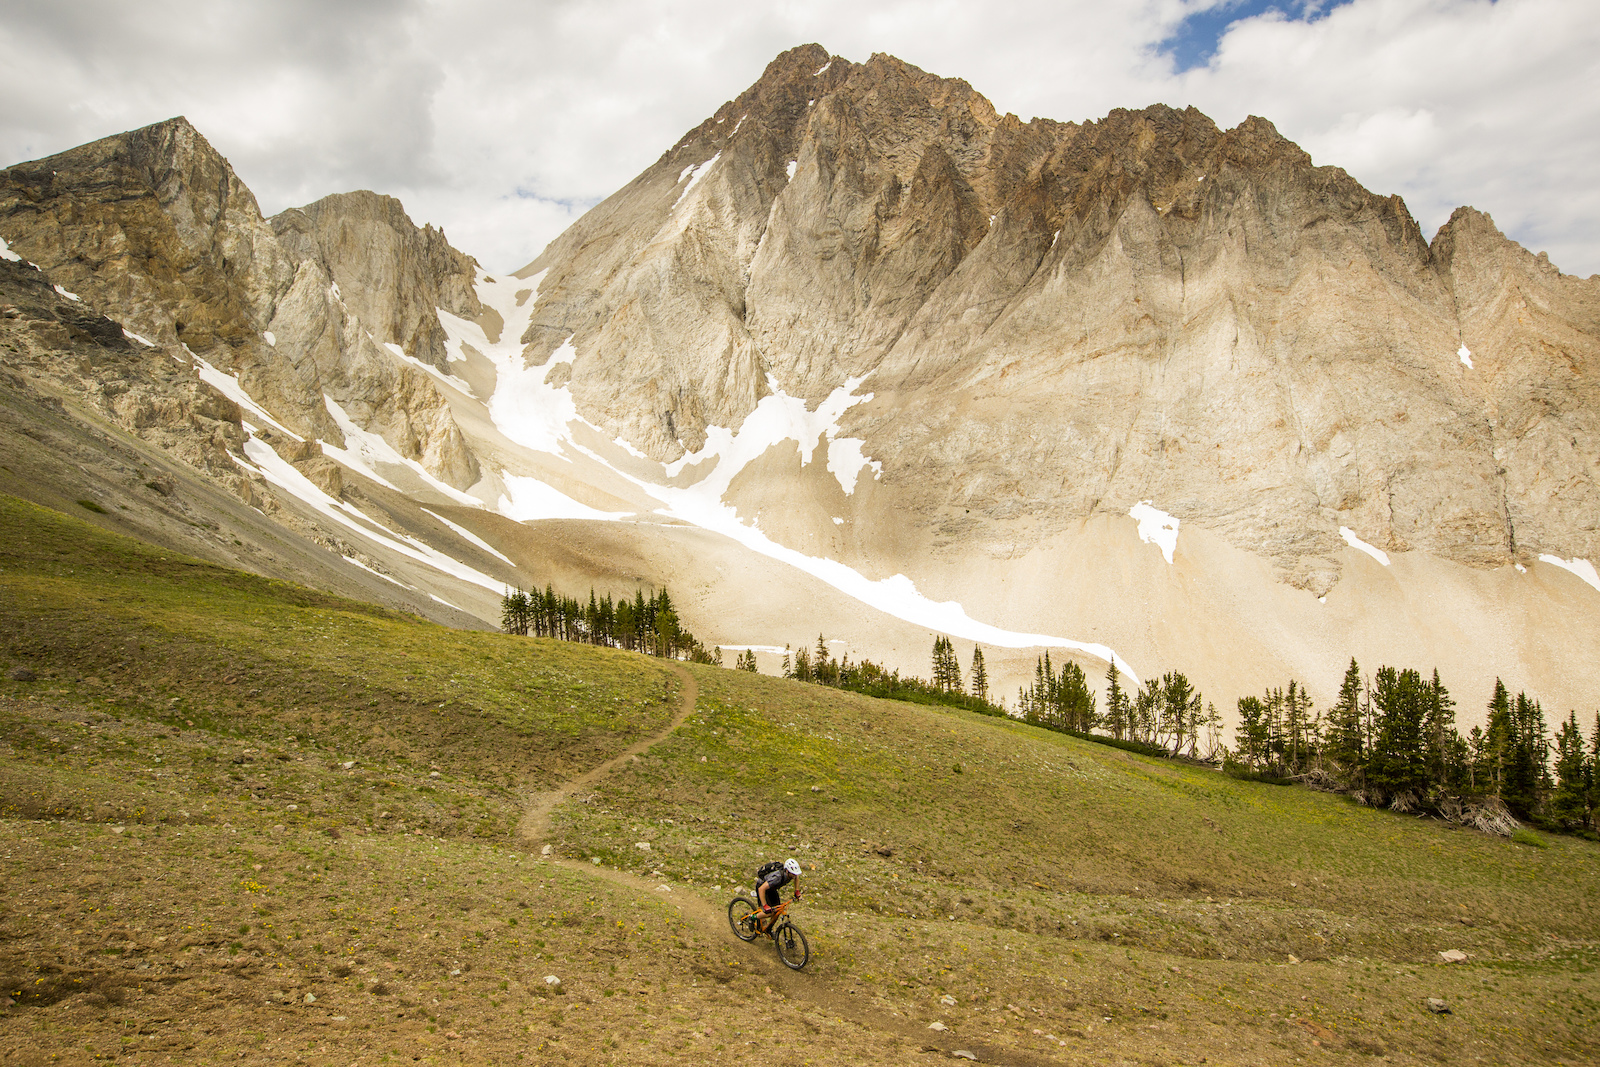 Wilderness mountain biking Photo By Leslie Kehmeier Courtesy of IMBA